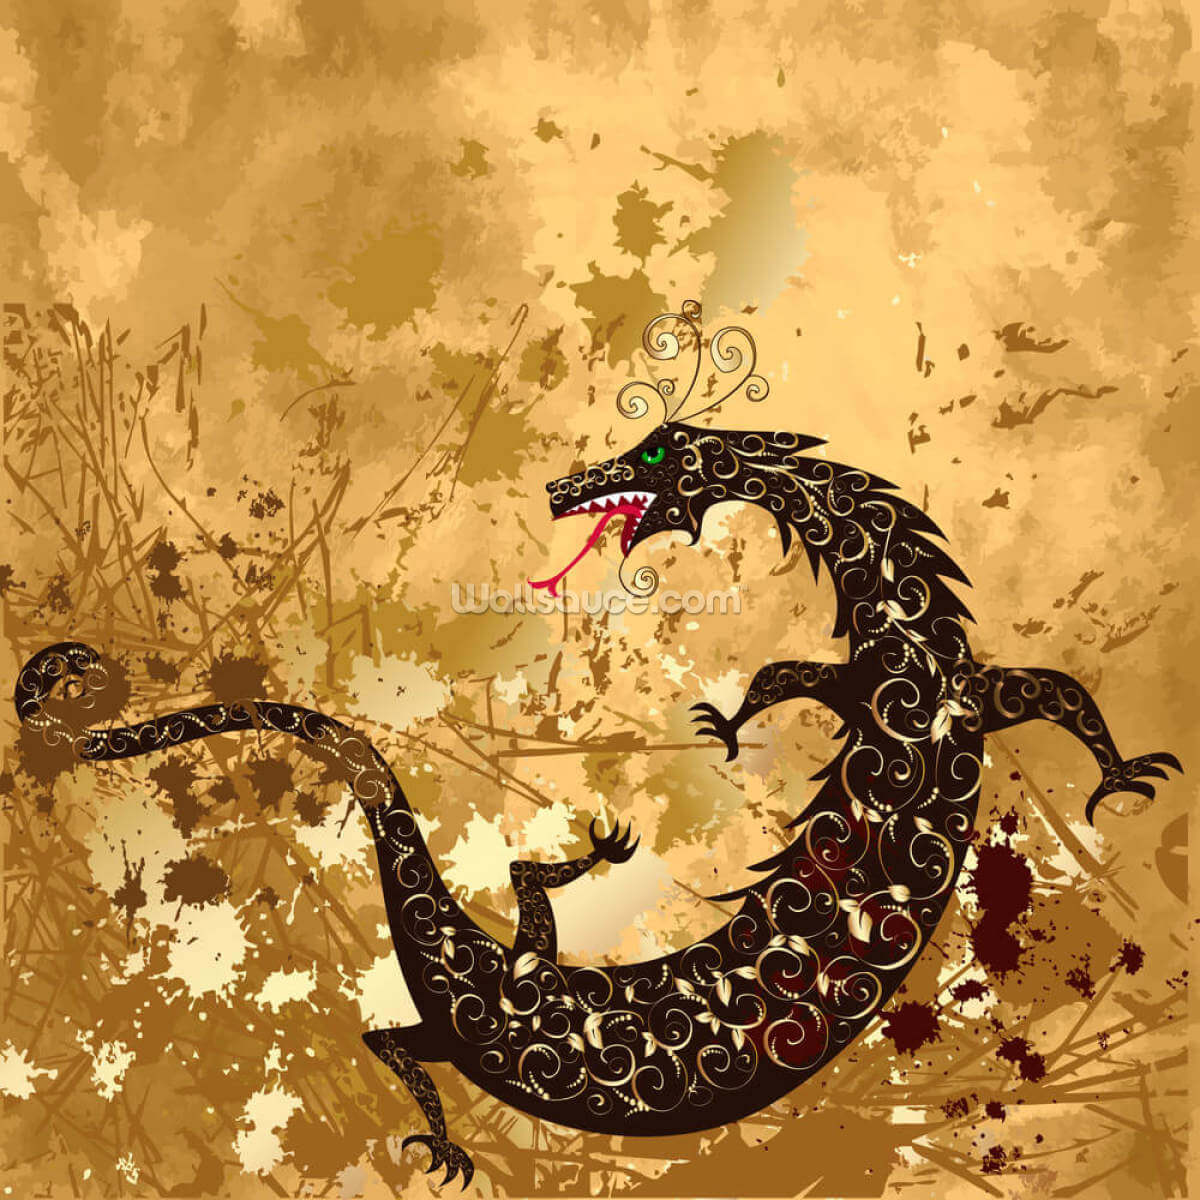 dragon-background-grunge